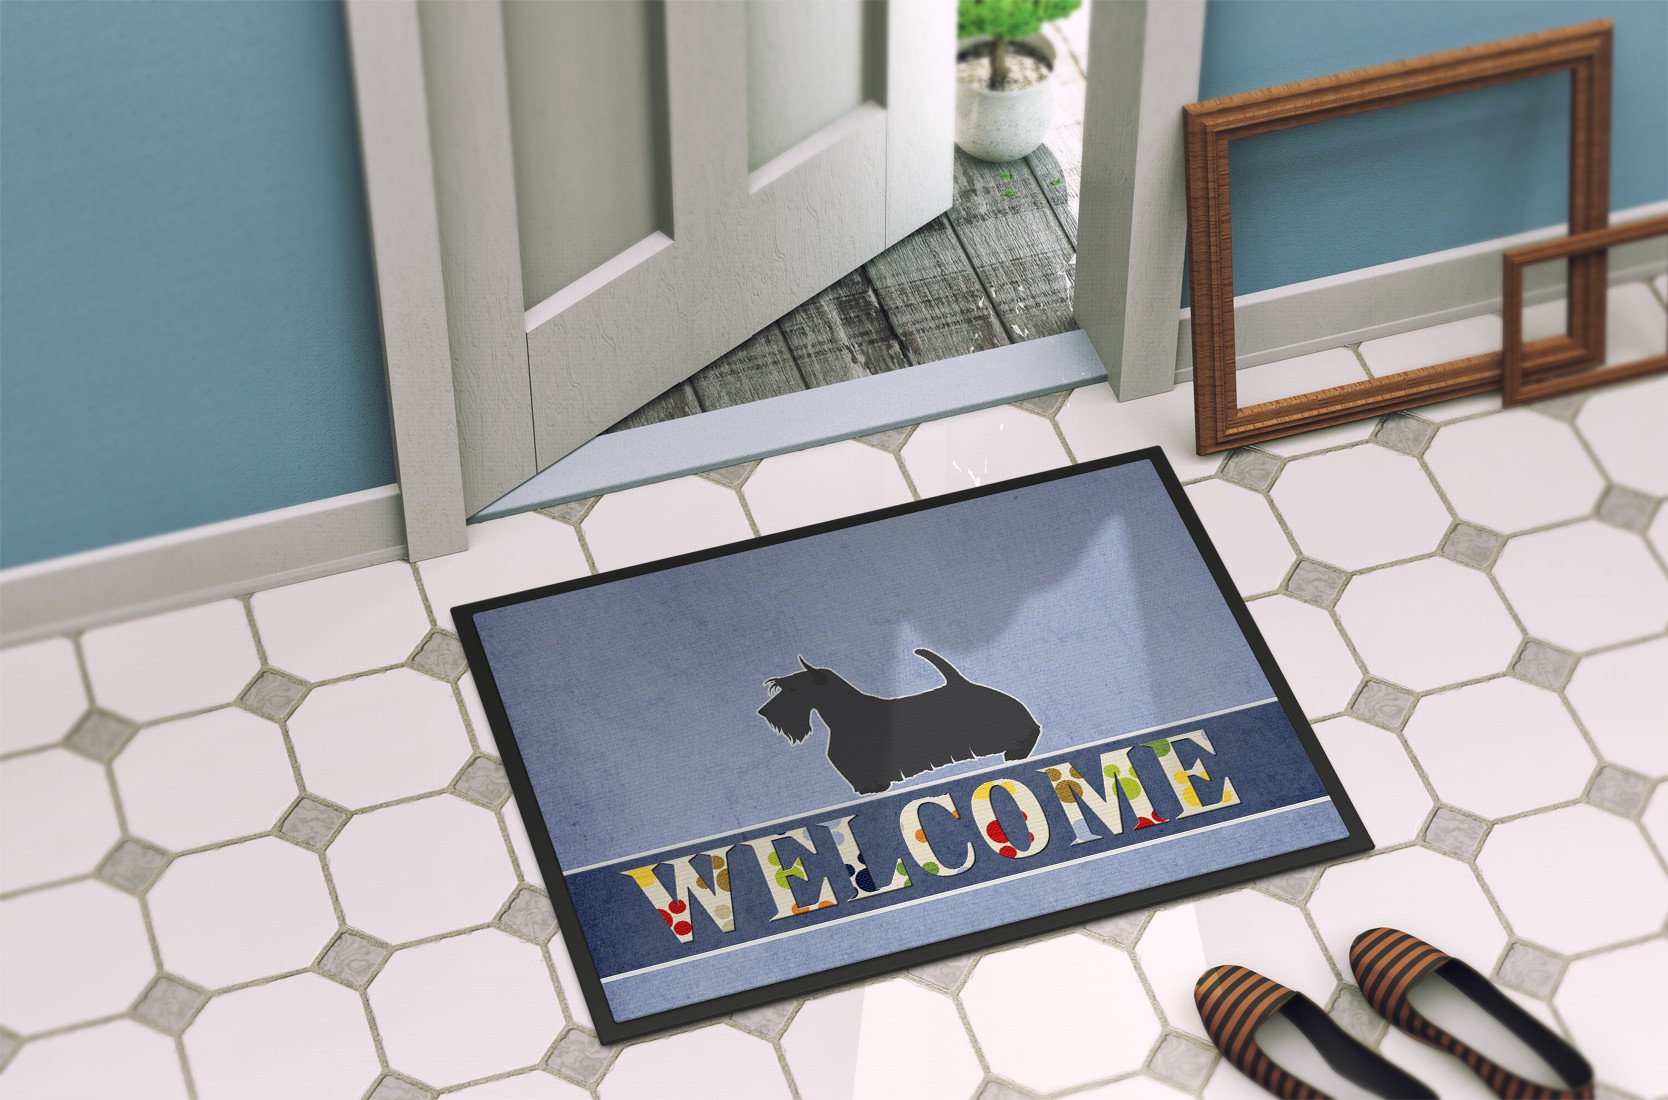 Scottish Terrier Welcome Indoor or Outdoor Mat 24x36 BB5573JMAT by Caroline's Treasures